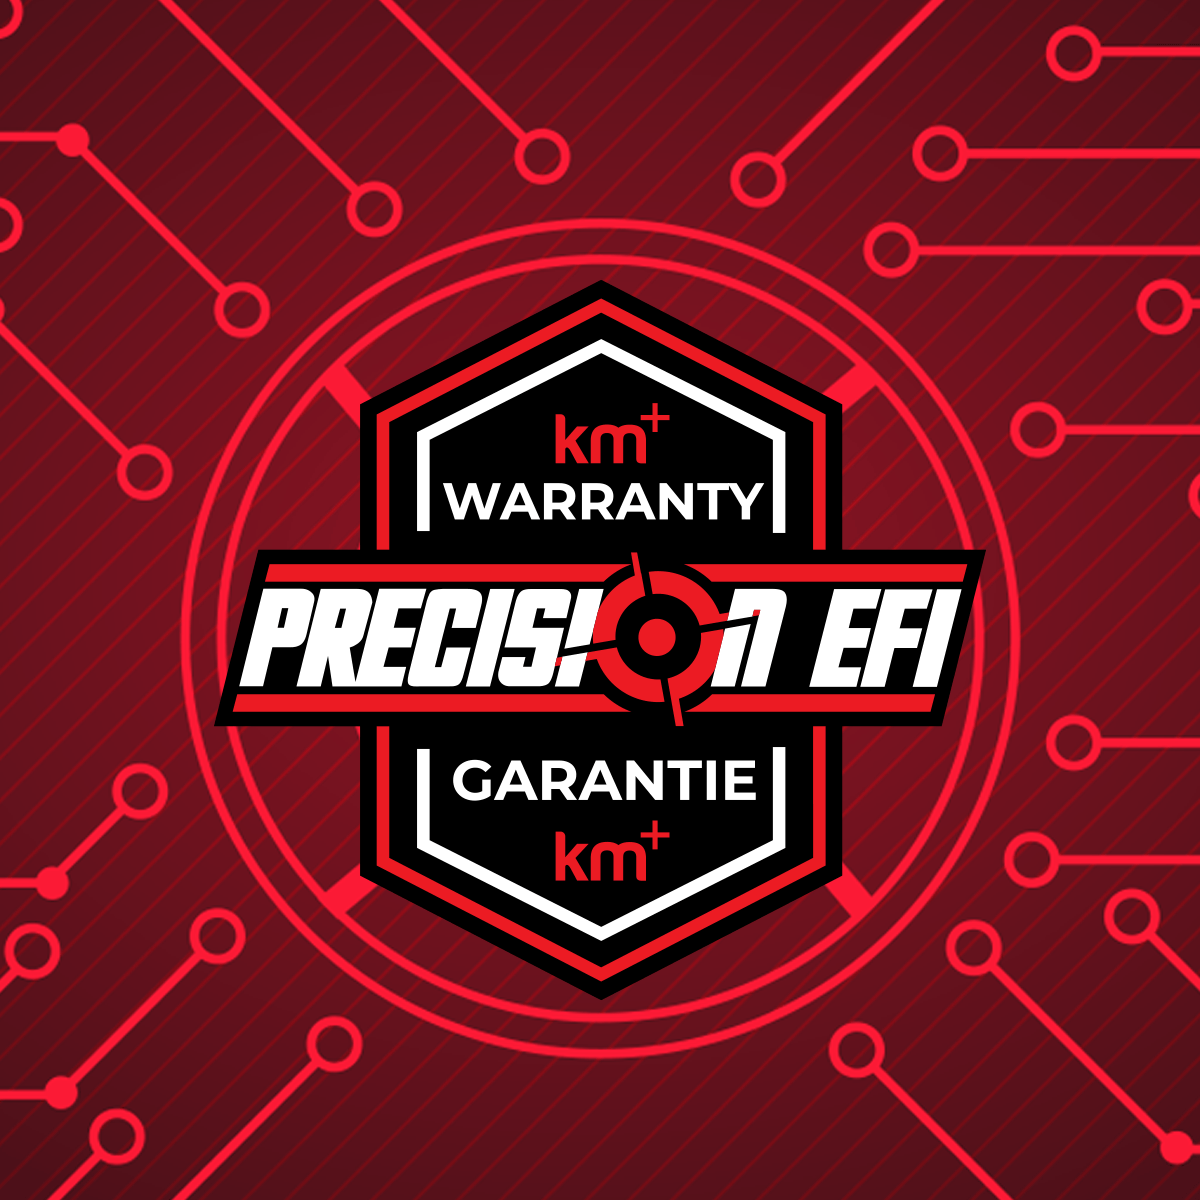 WARRANTY - 998T - Precision EFI